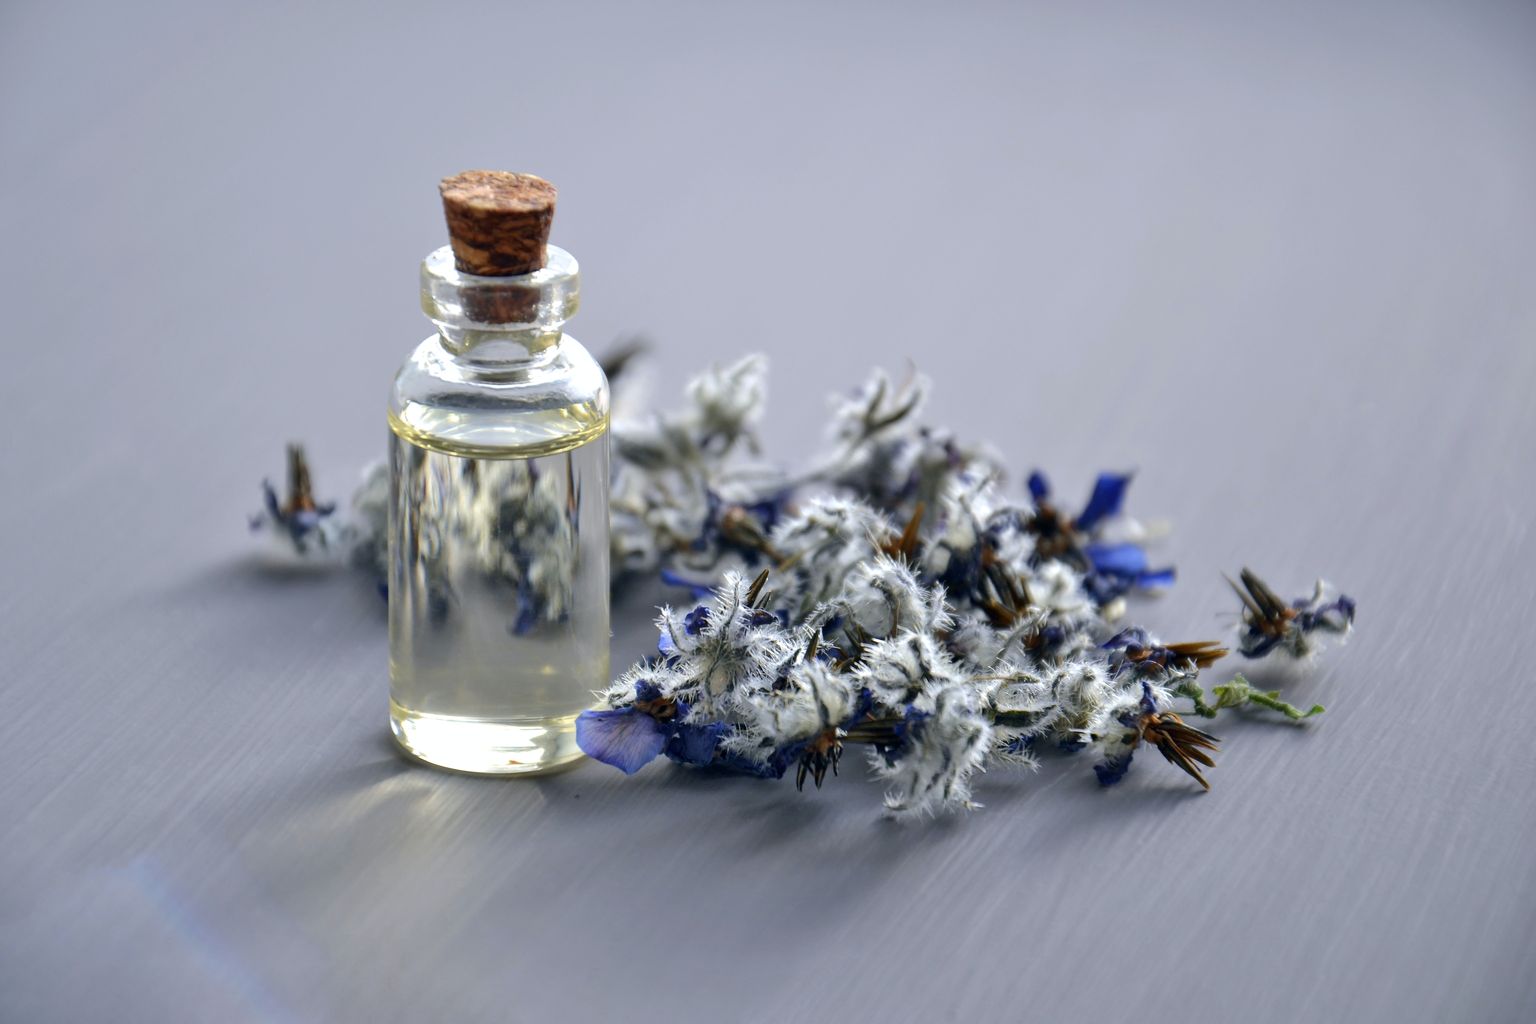 Flores con una pequeña botella de vidrio. En su interior hay un aceite aromático.